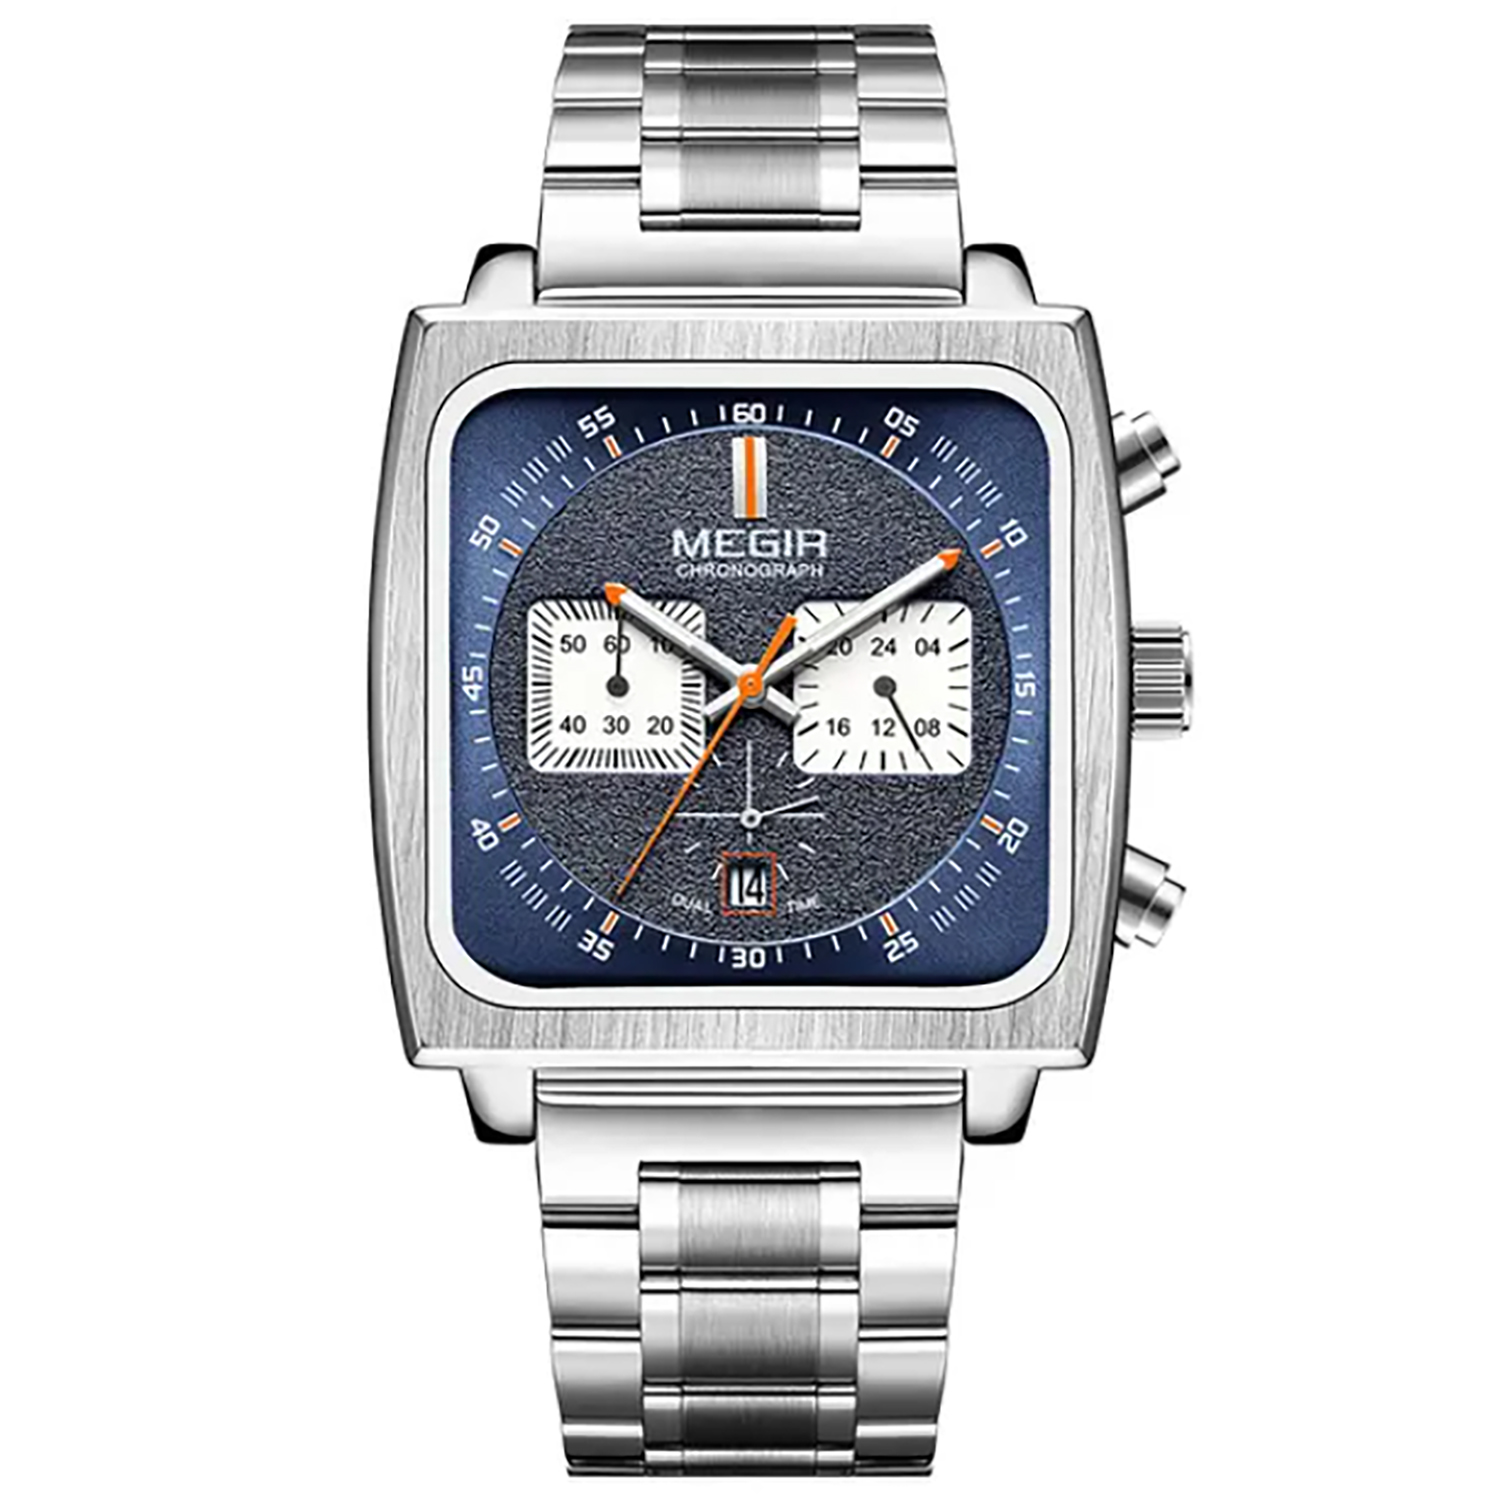 ساعت مچی عقربه ای مگیر مدل MS2182G Steel Professional Edition